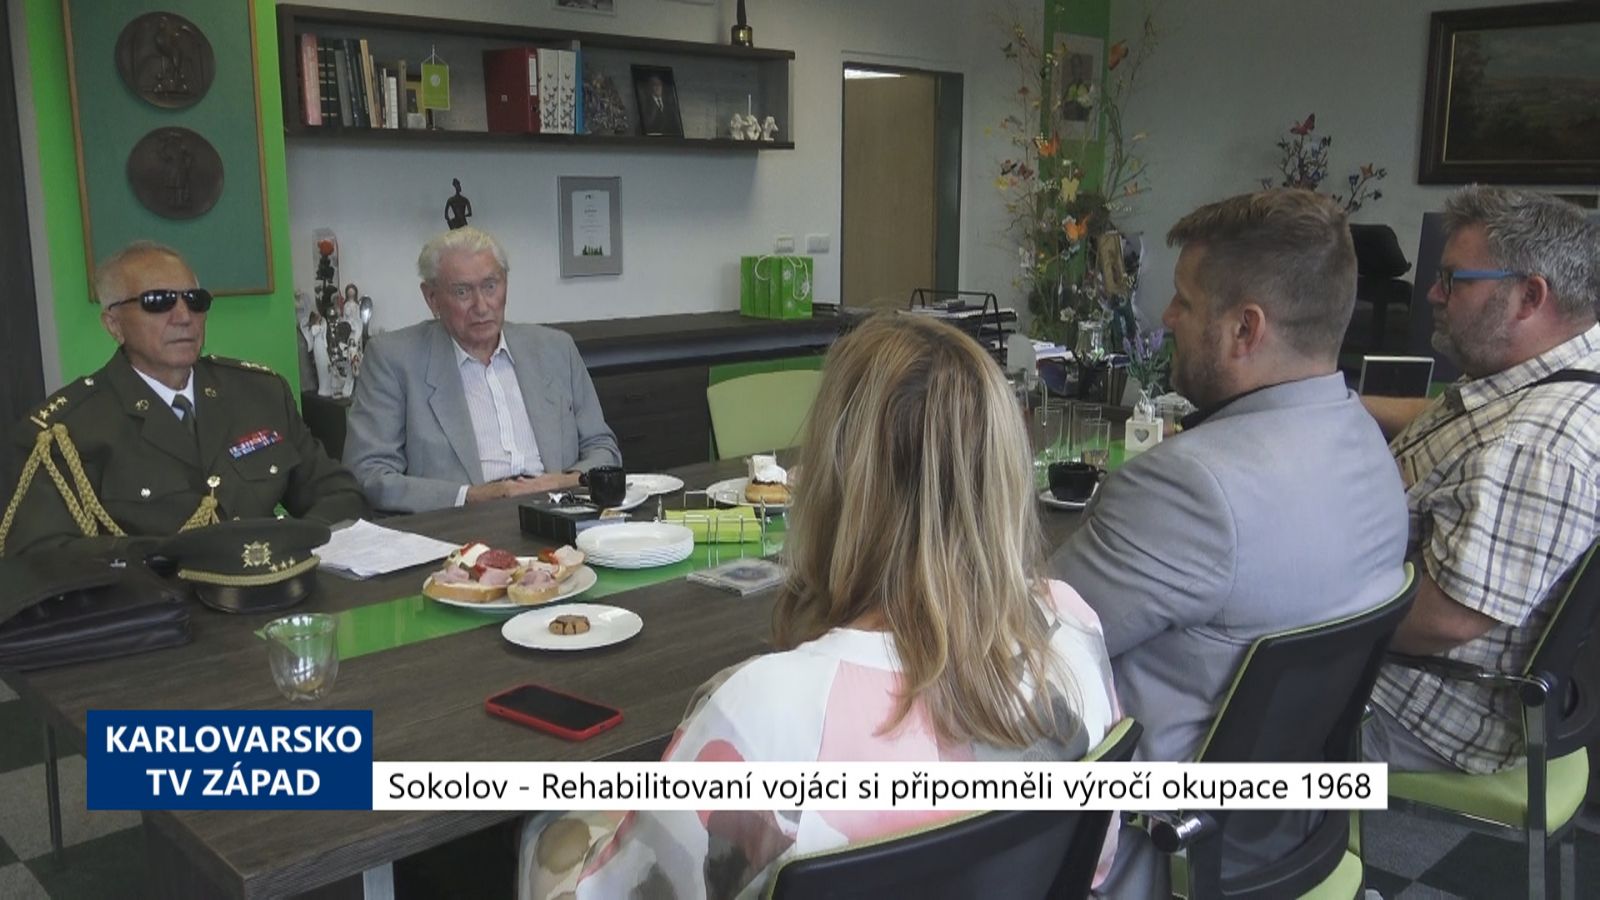 Sokolov: Rehabilitovaní vojáci si připomněli výročí okupace 1968 (TV Západ)